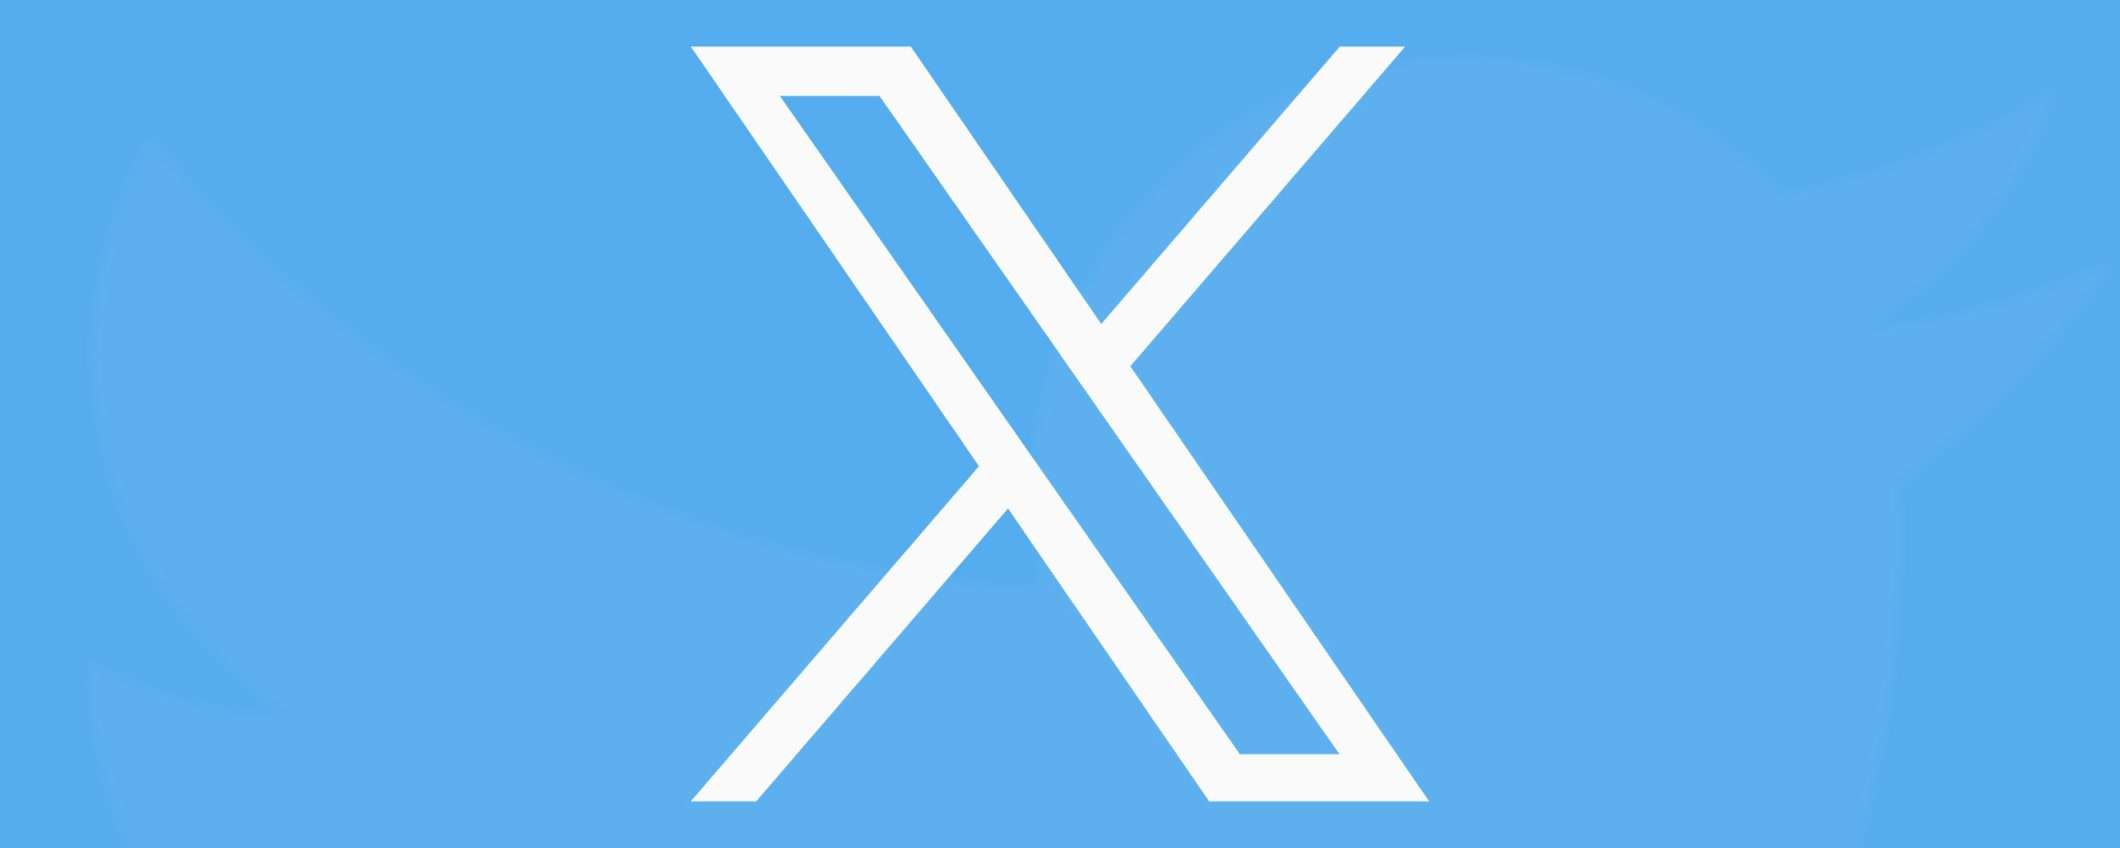 X supporta il login con passkey su app iOS